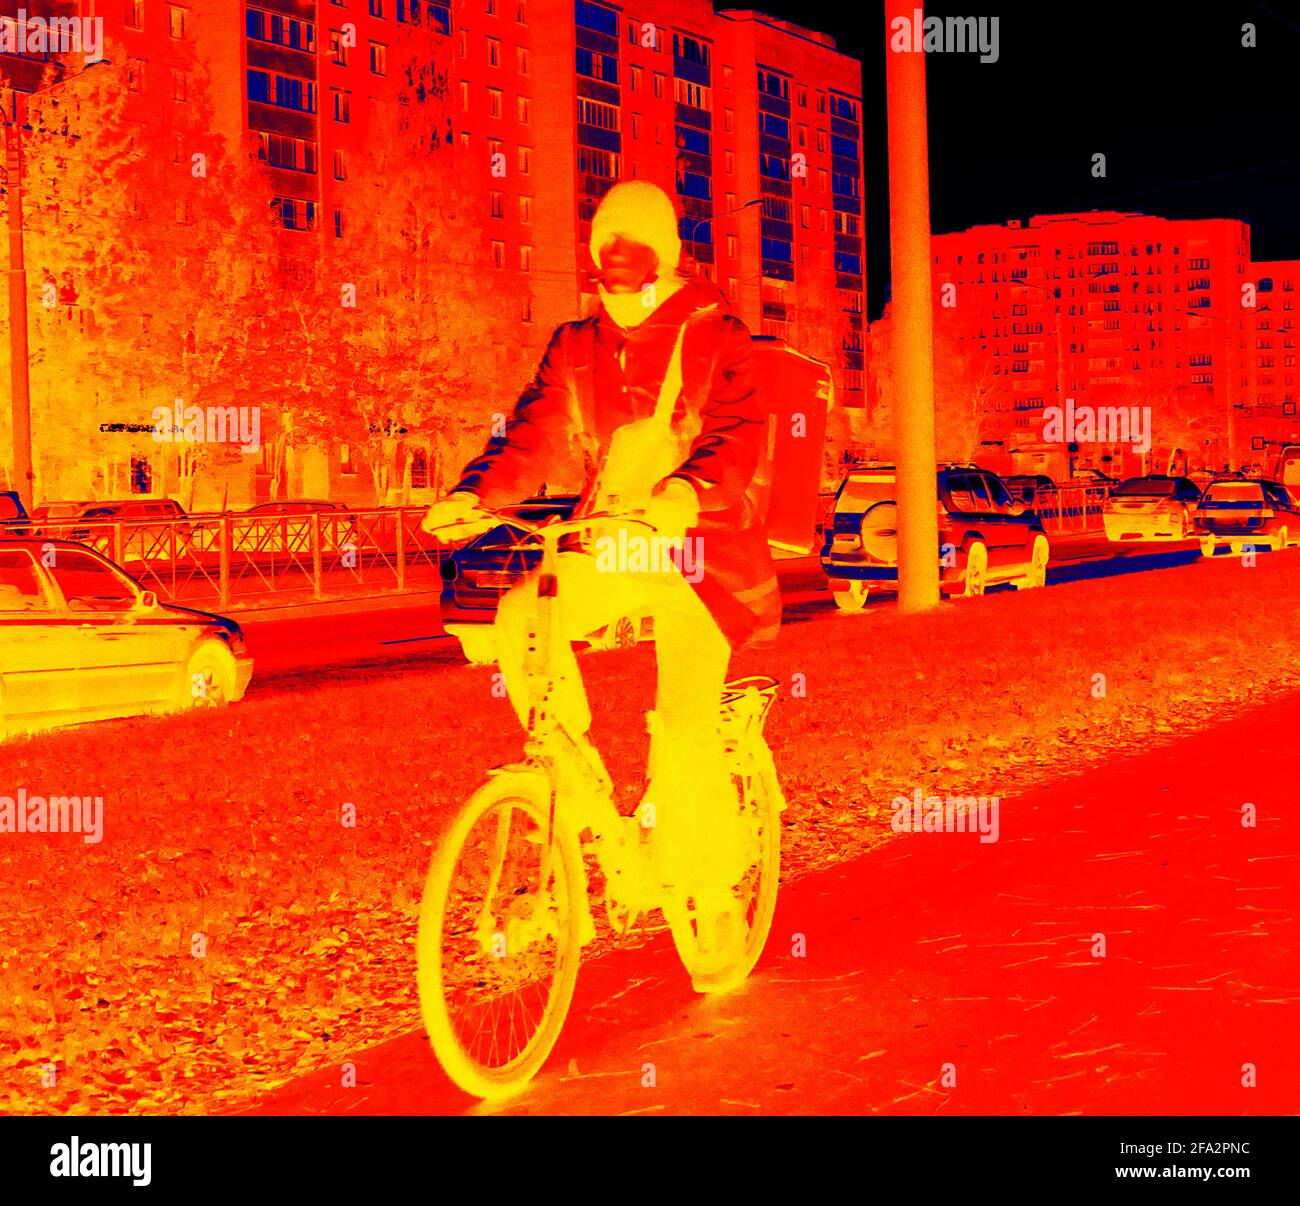 Caméra infrarouge haute technologie. Les gens et les rues sont tracés par  la distribution de température de la surface étudiée (jour et nuit).  Cycliste de jour nuageux Photo Stock - Alamy